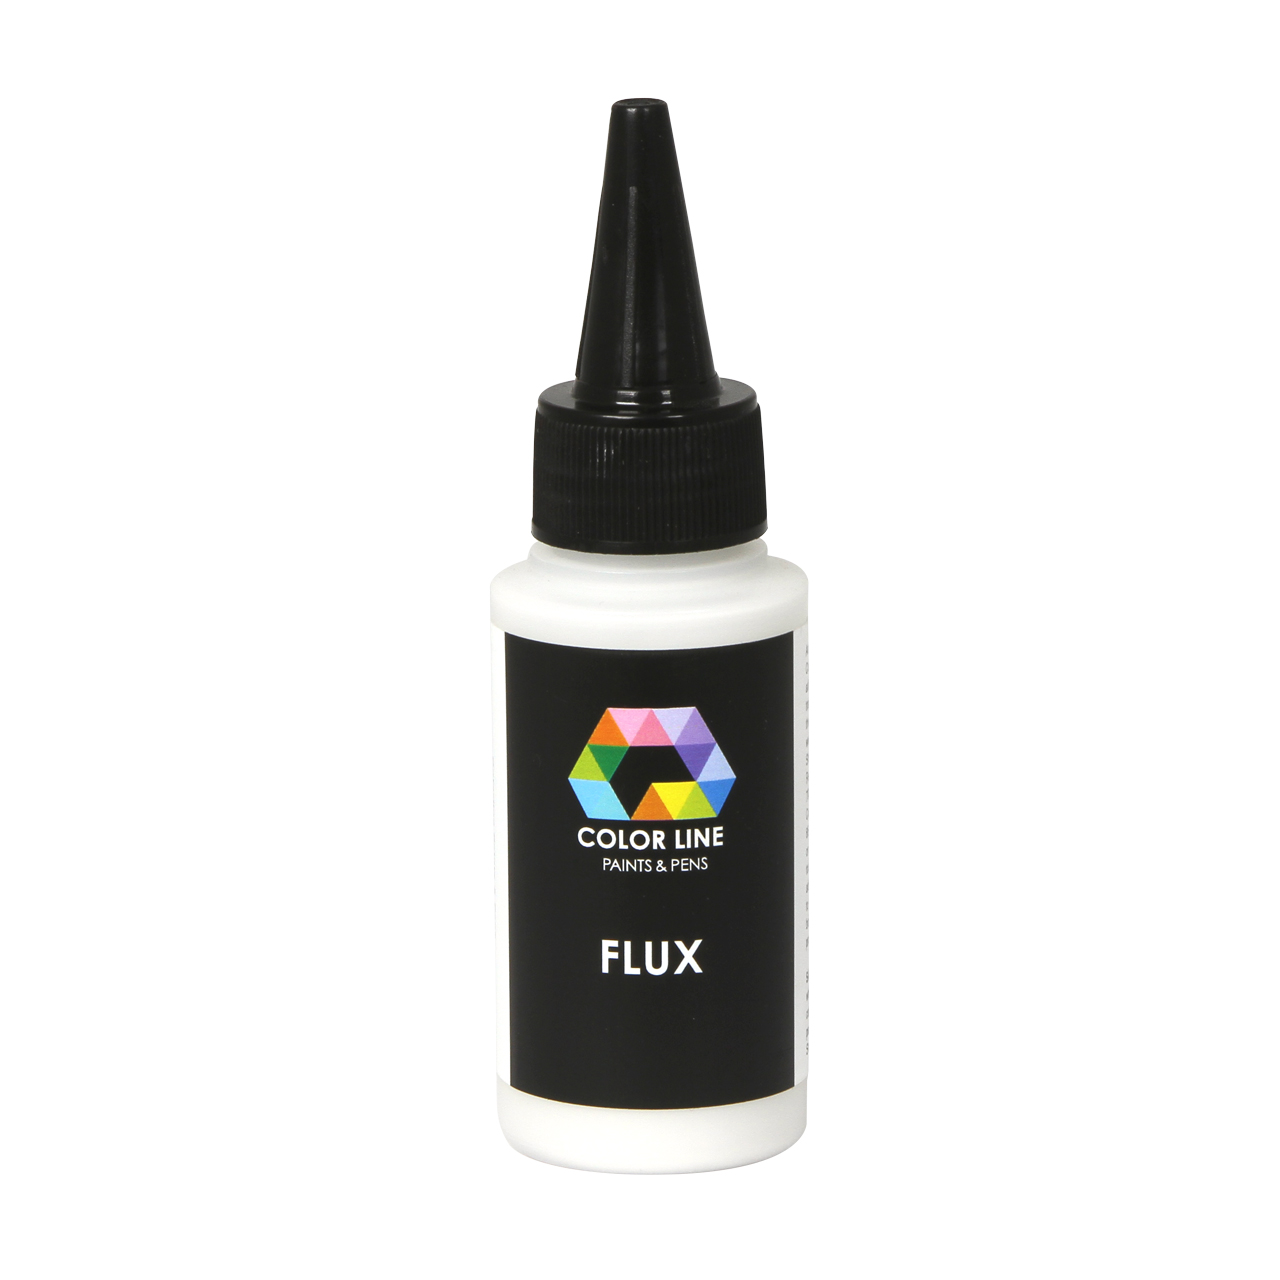 Color Line Flux 62g